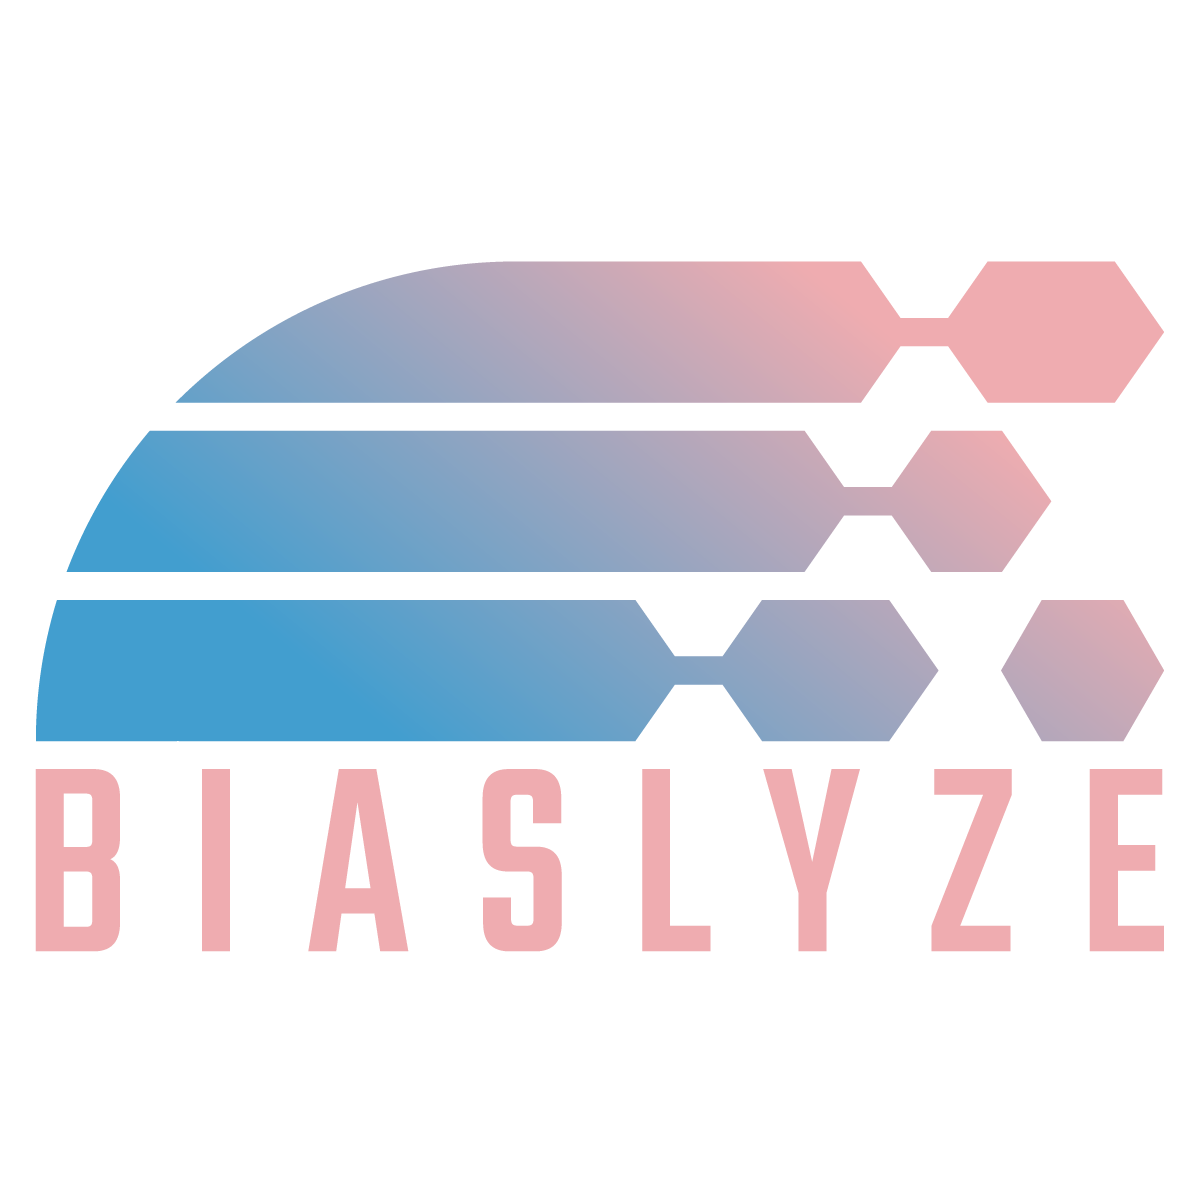 biaslyze